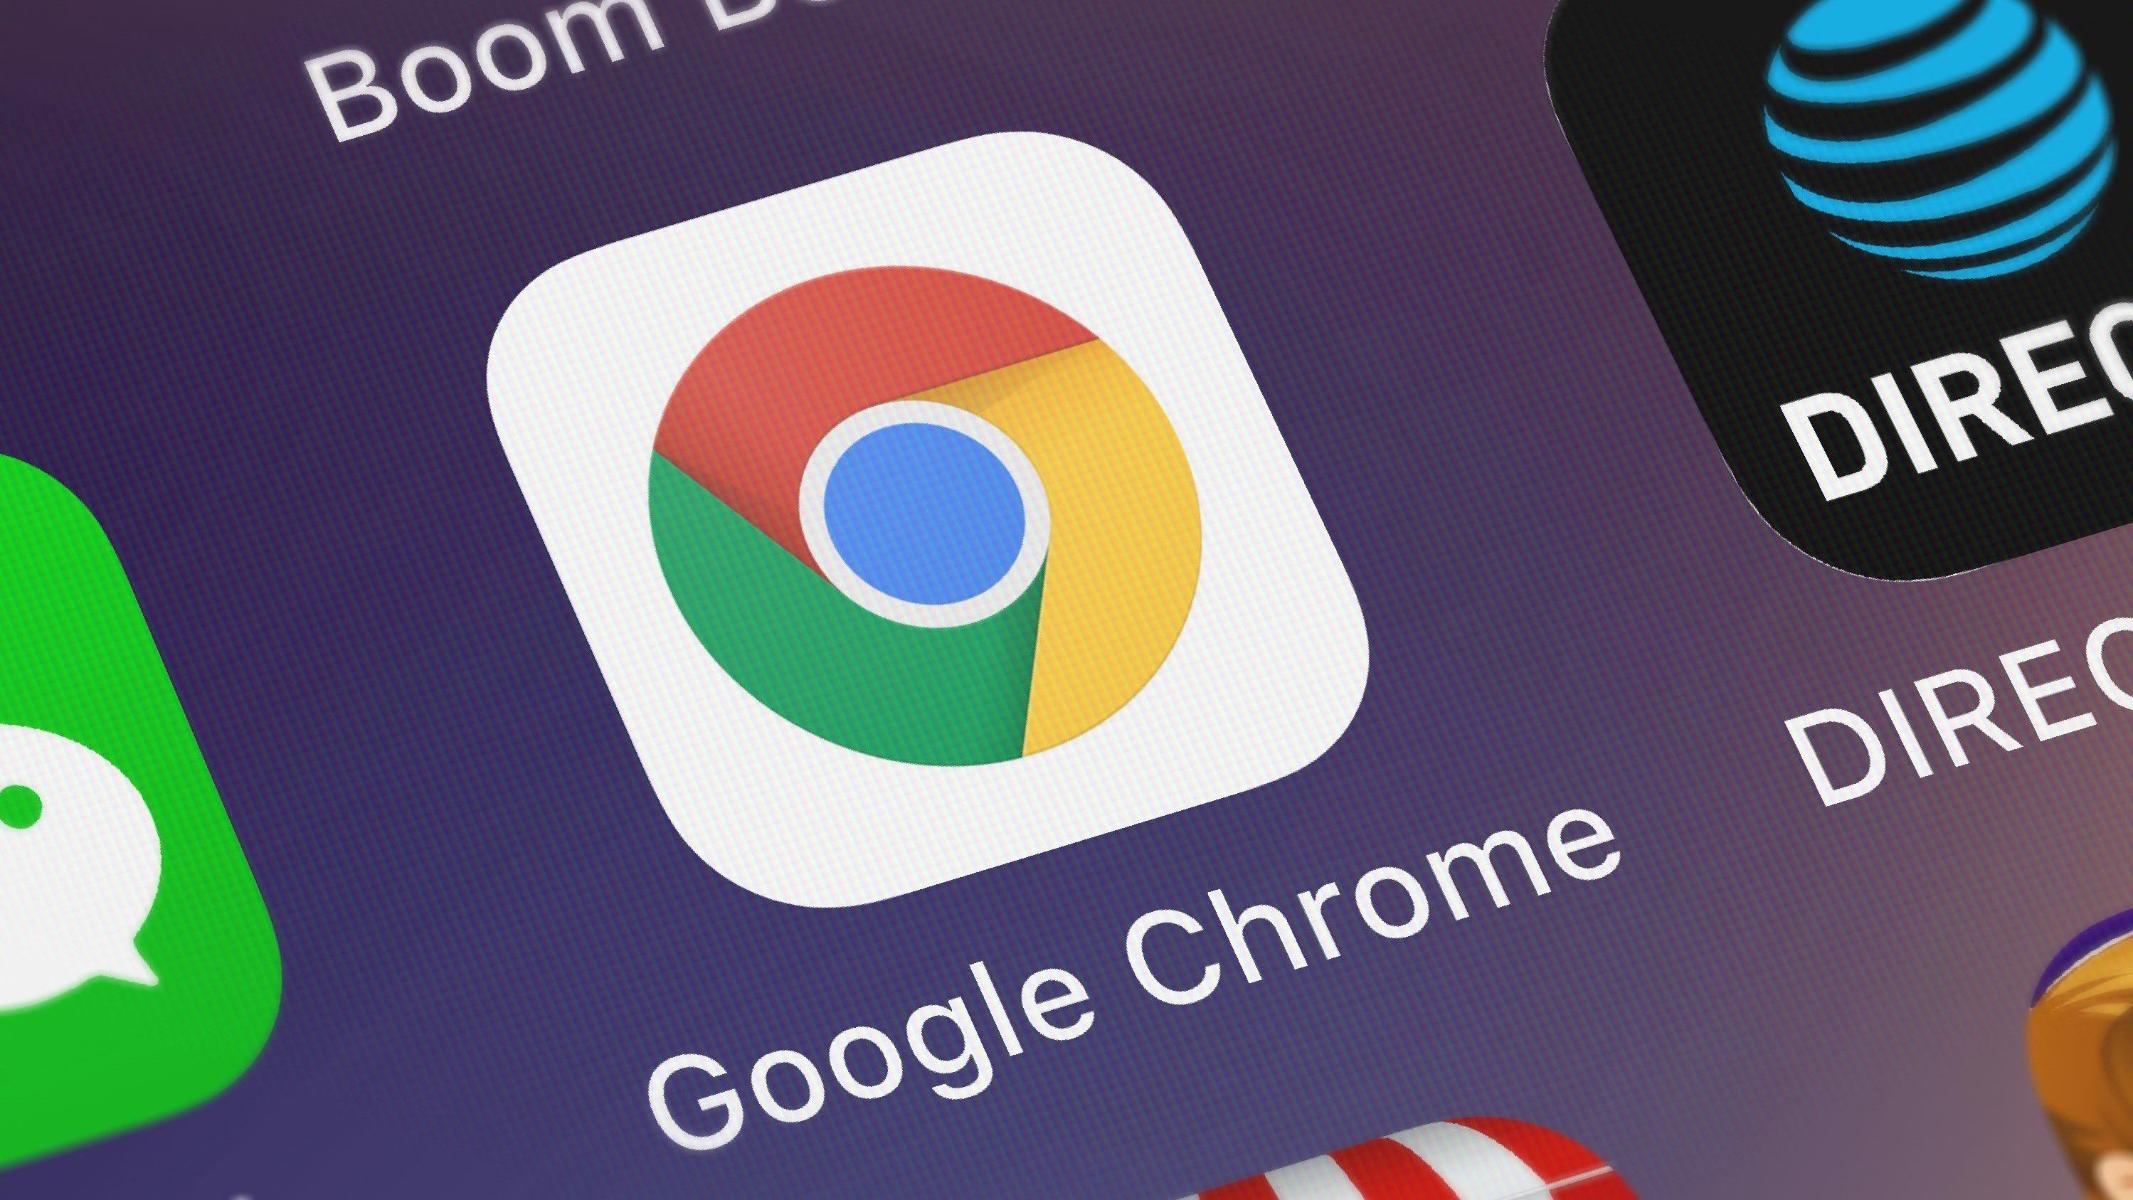 Google Chrome per Android permetterà presto di copiare e salvare i fotogrammi dai video